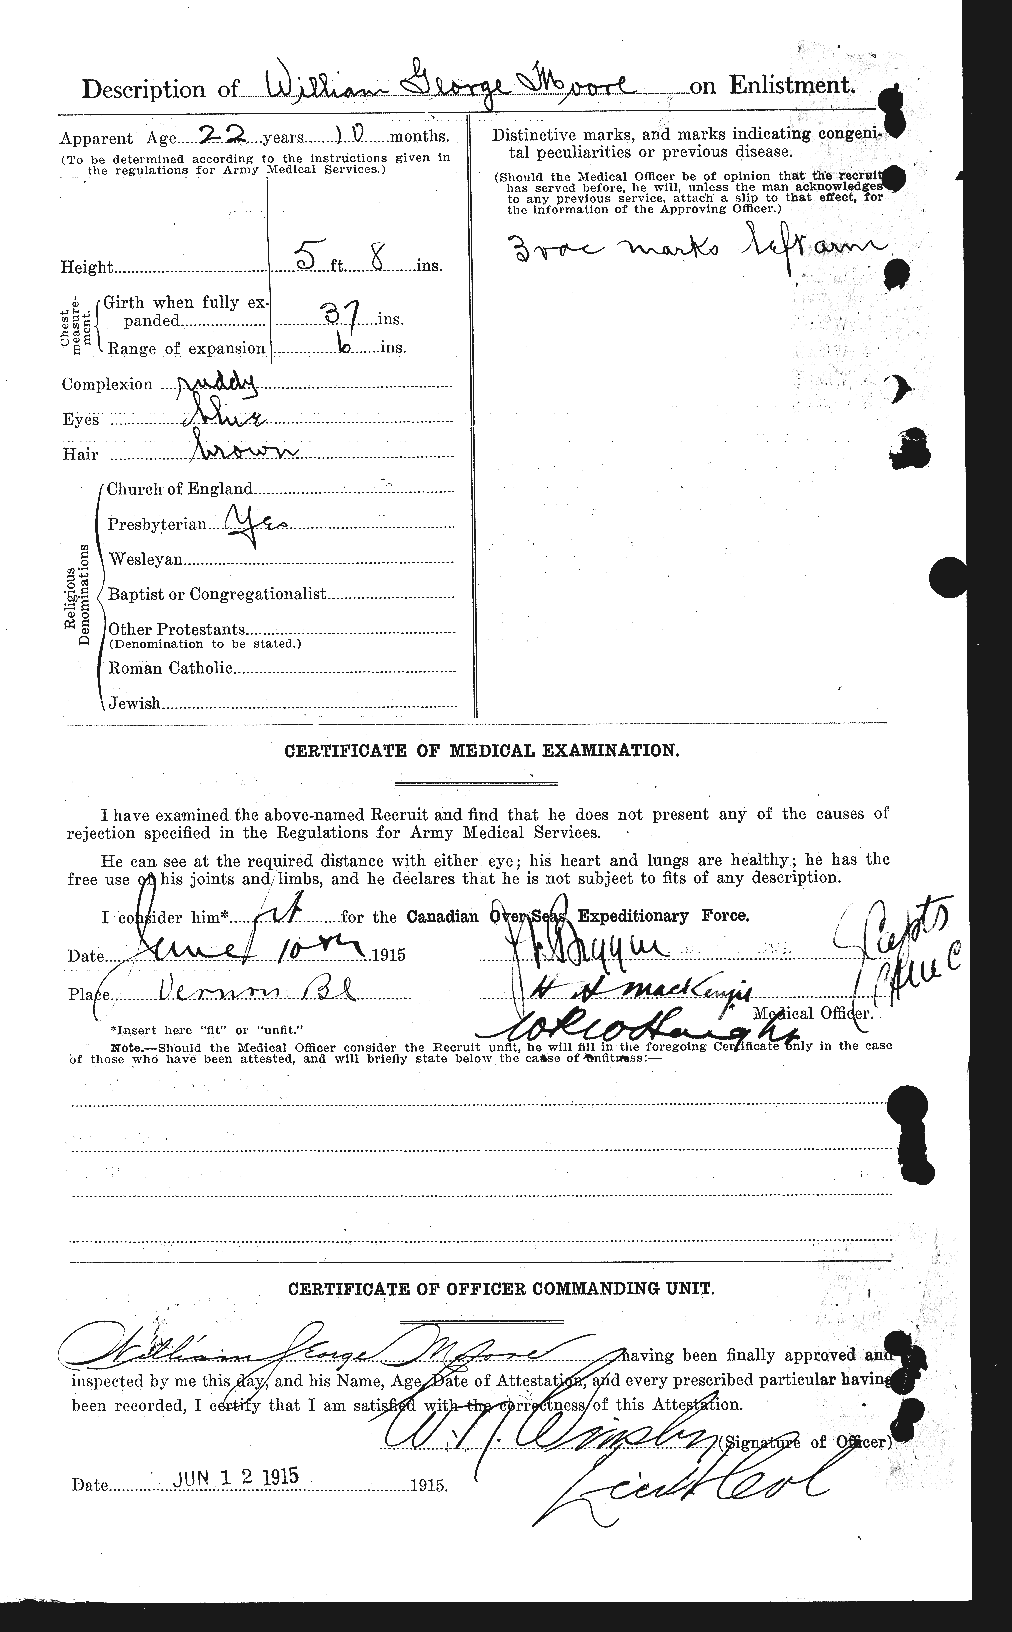 Dossiers du Personnel de la Première Guerre mondiale - CEC 505812b